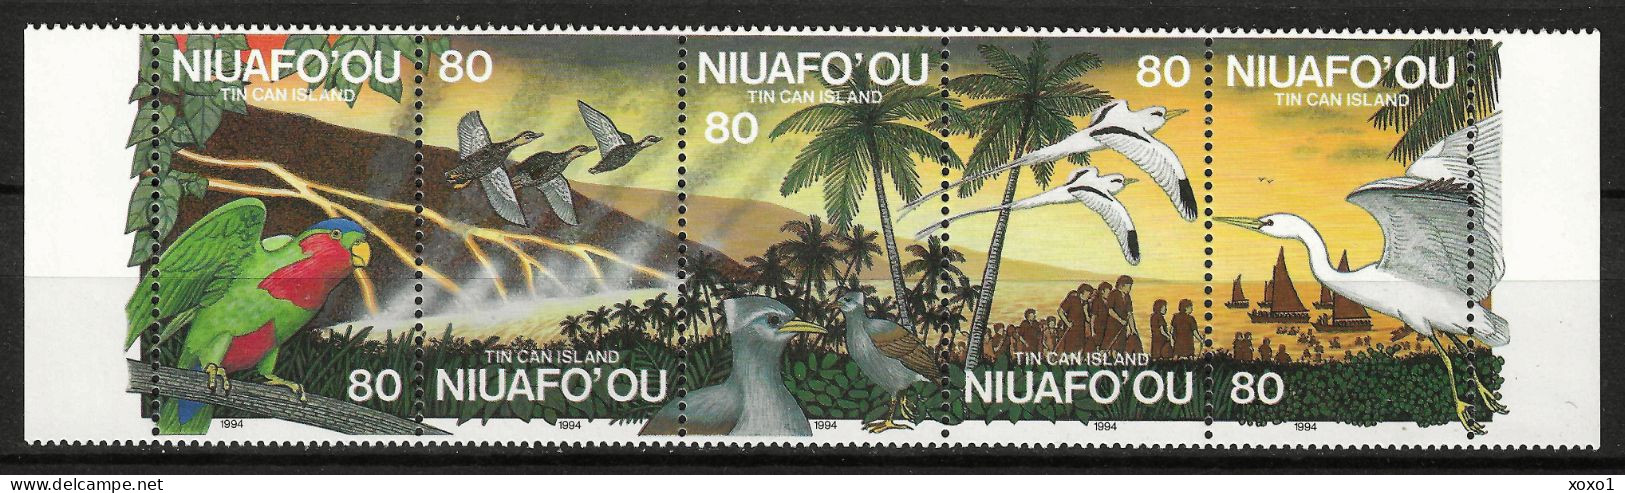 Niuafo'Ou 1994 MiNr. 269 - 273 Niuafo'ou-Insel Geology, Volcanos, Volcanic Eruption, Birds  5v MNH** 14,00 € - Vulkane